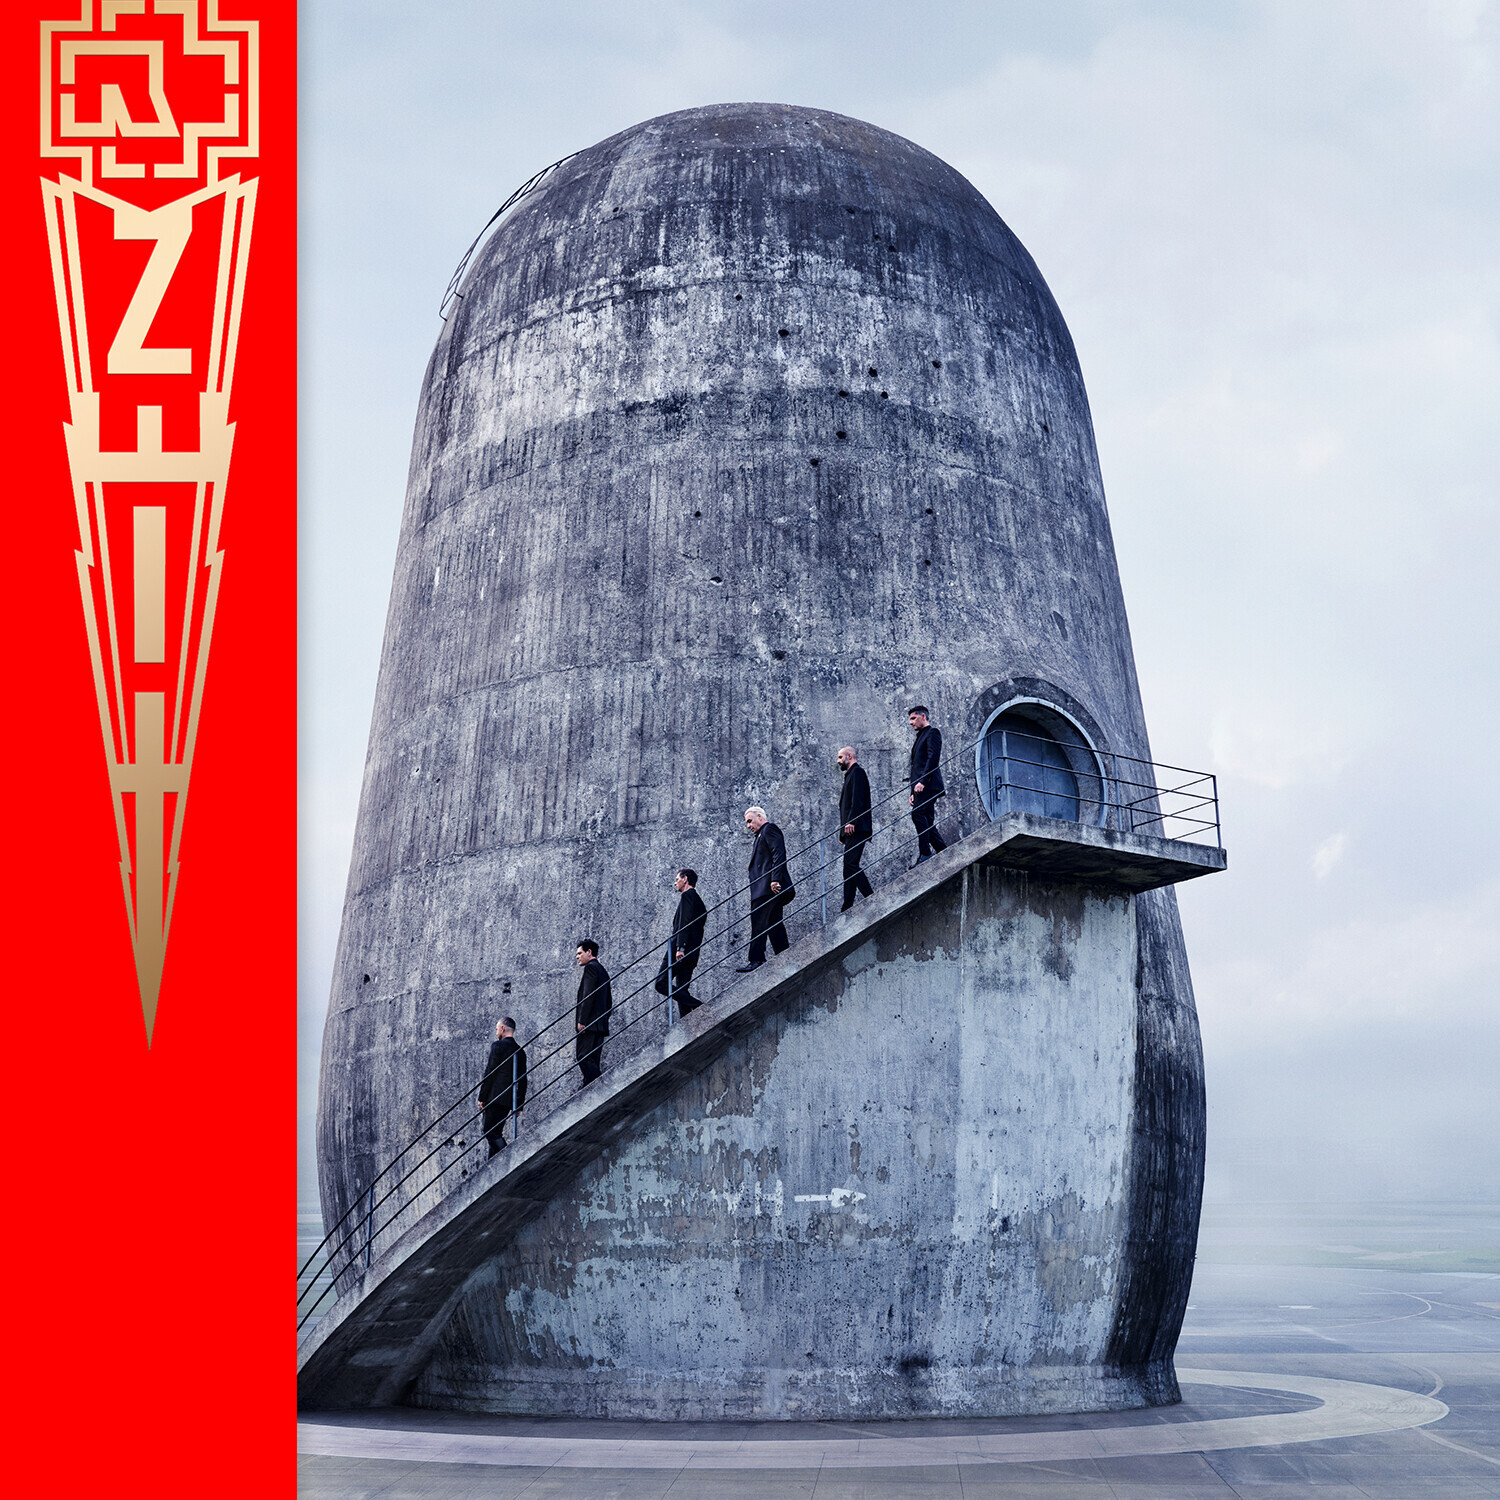 Zeit - Rammstein New Album, 2022